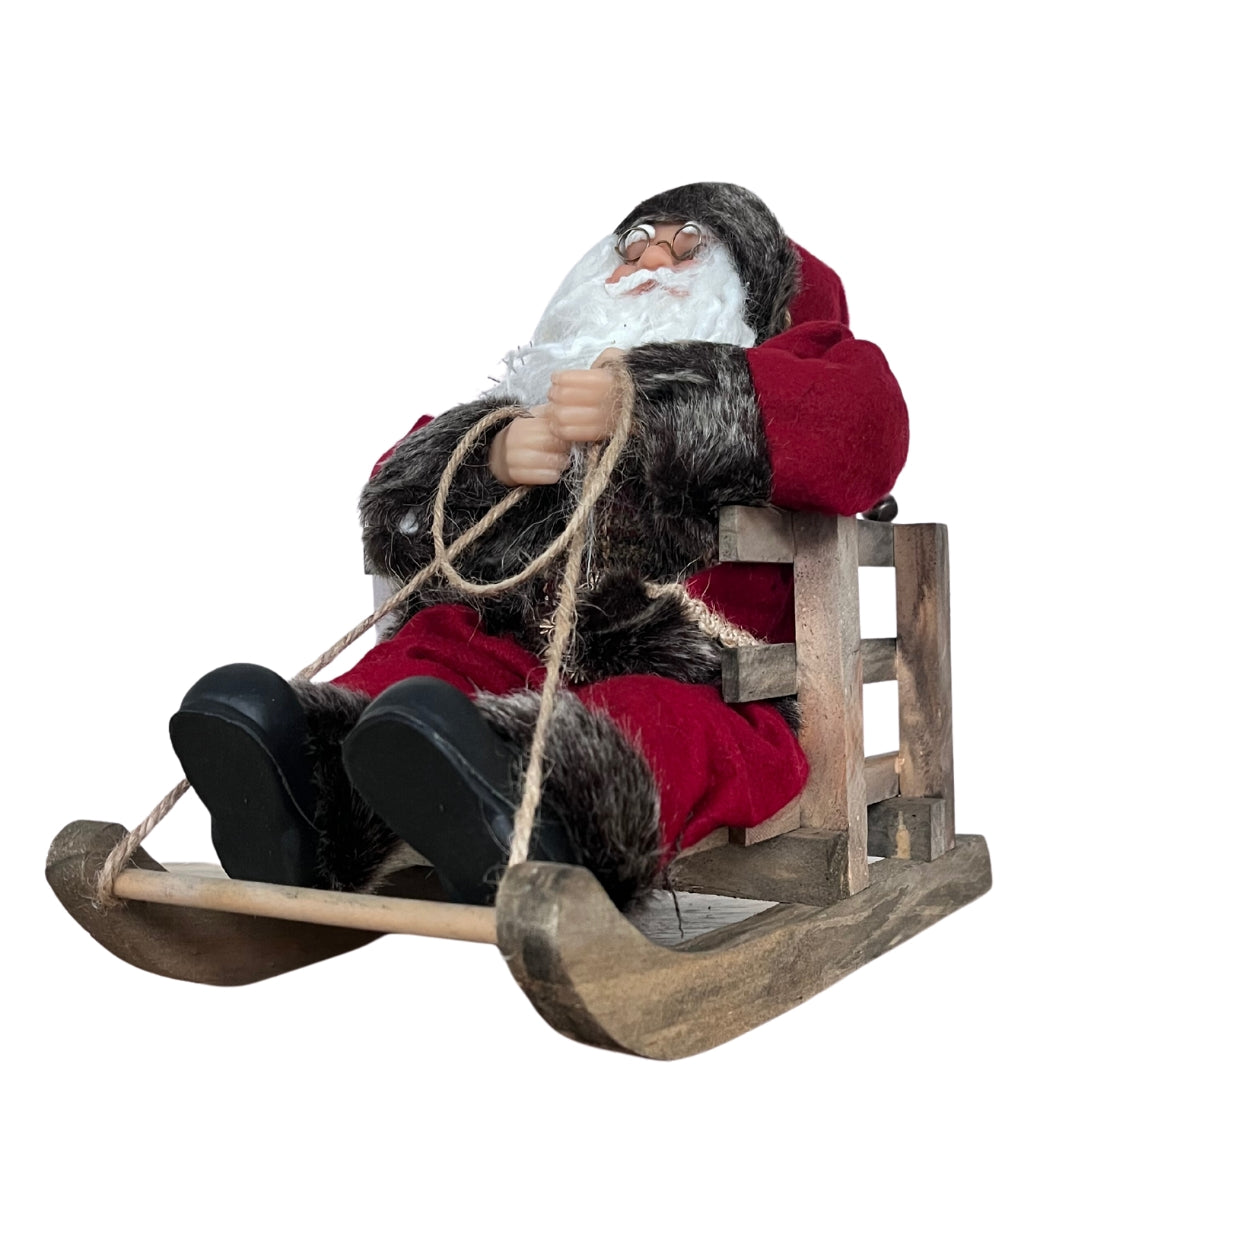 Weihnachtsmann auf Schlitten,Weihnachtsdeko, Santa Claus auf Schlitten